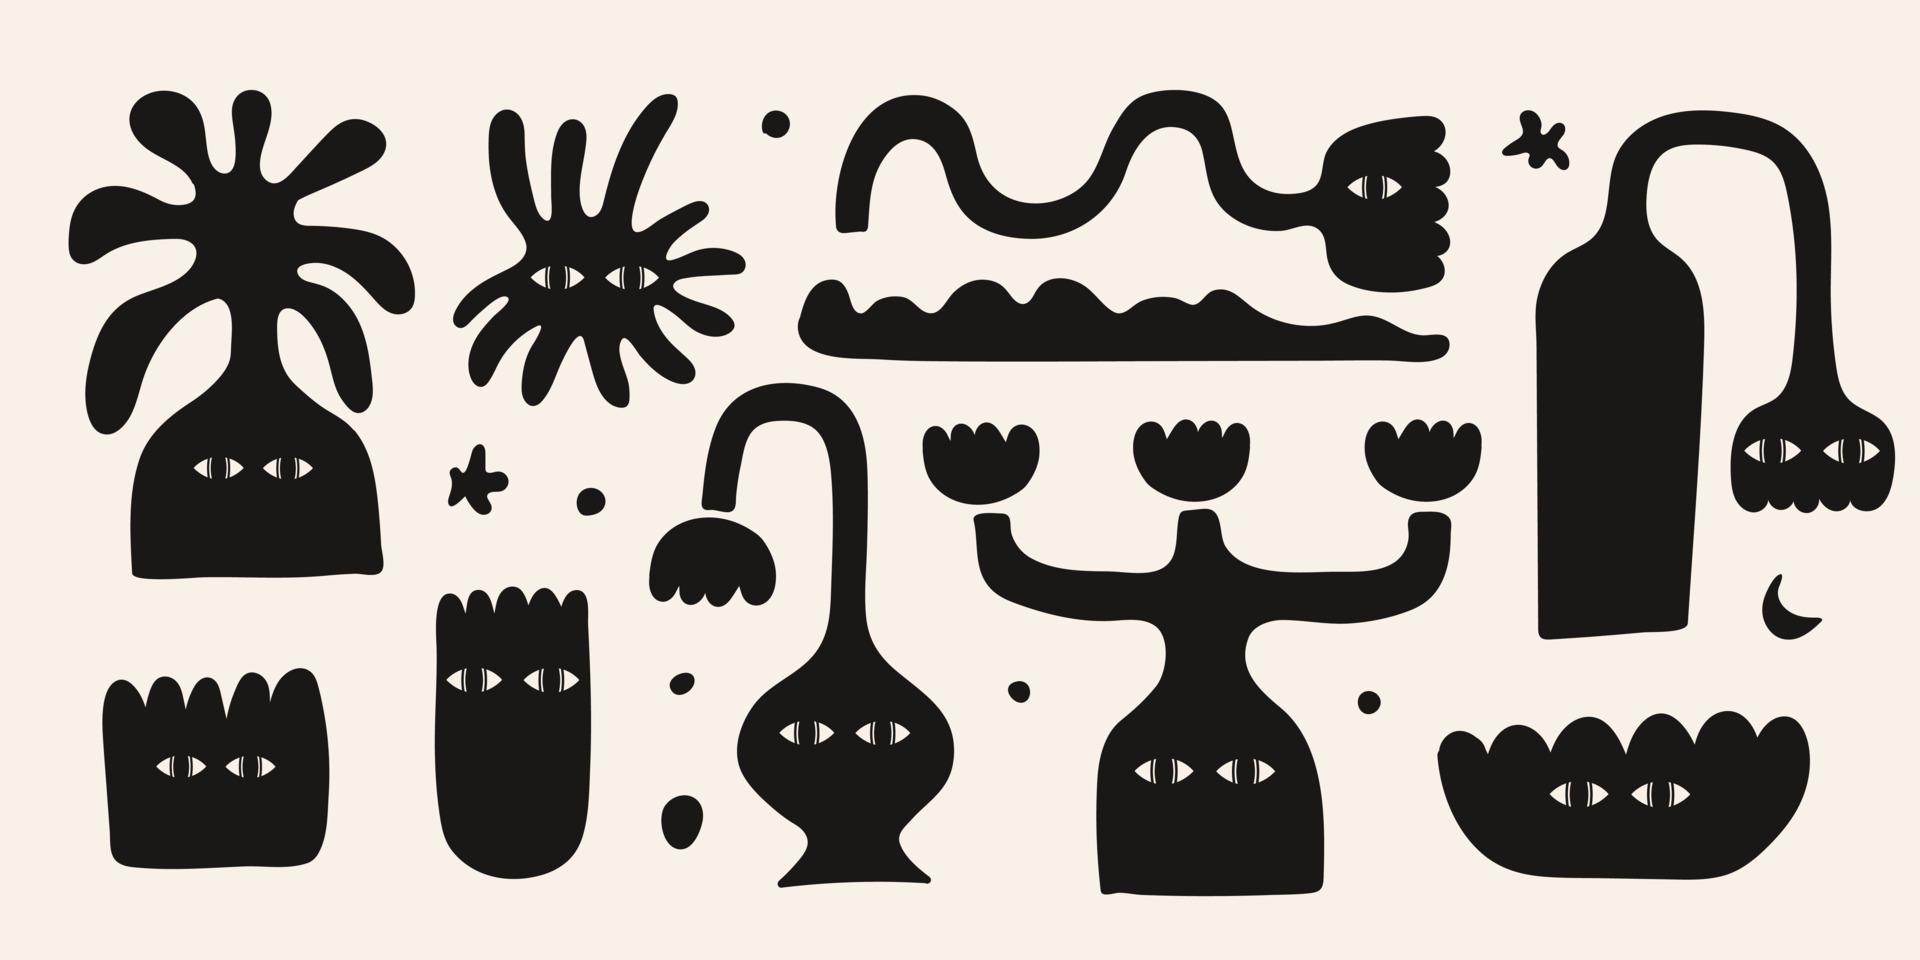 abstracte set met zwarte diverse vreemde vazen en bloemen. trendy handgetekende fictieve personages geïsoleerd op een lichte achtergrond. vector